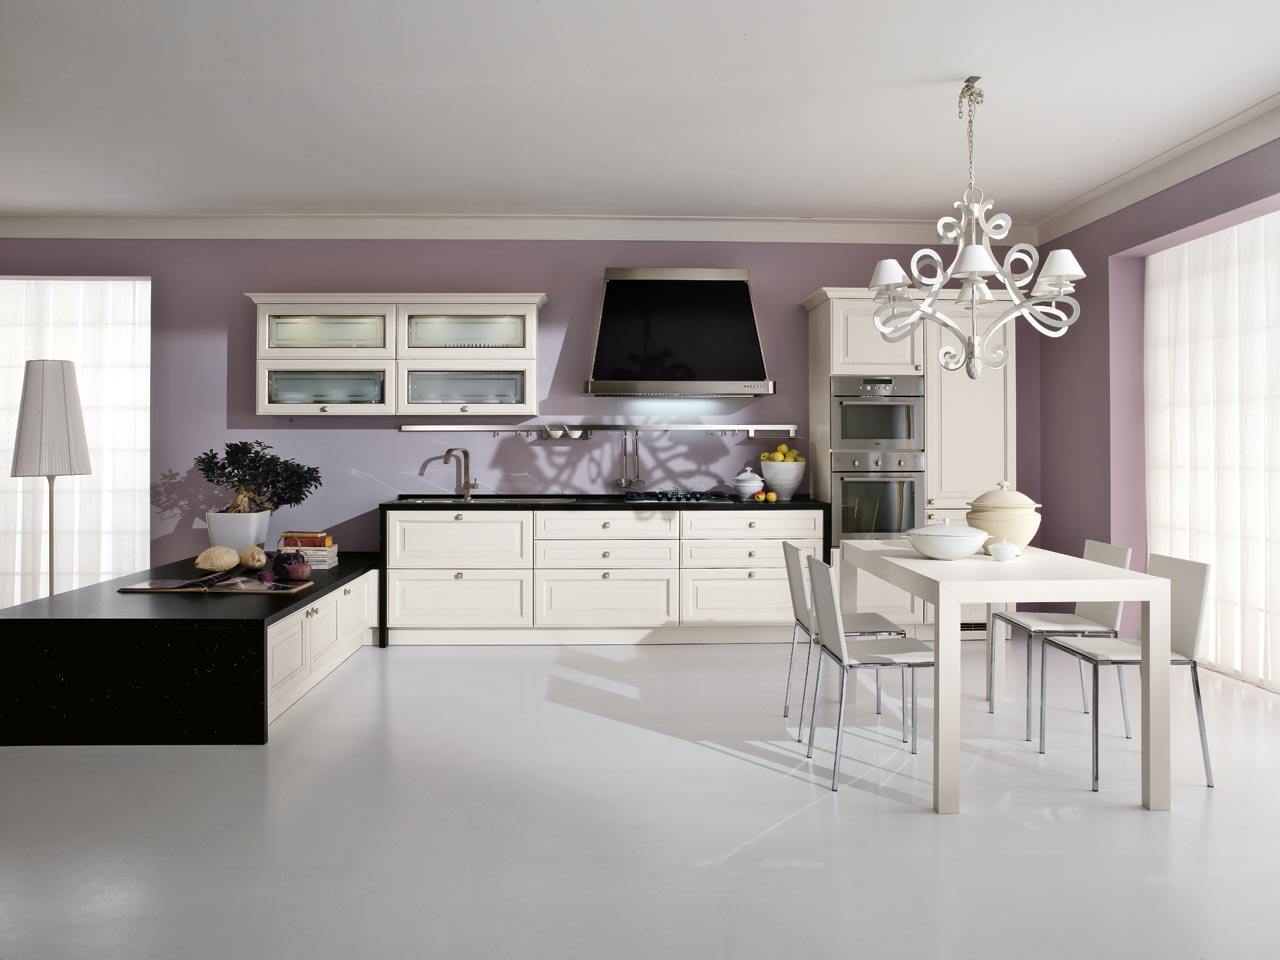 moderne Kücheneinrichtung möbeldesign-essbereich tisch stühle